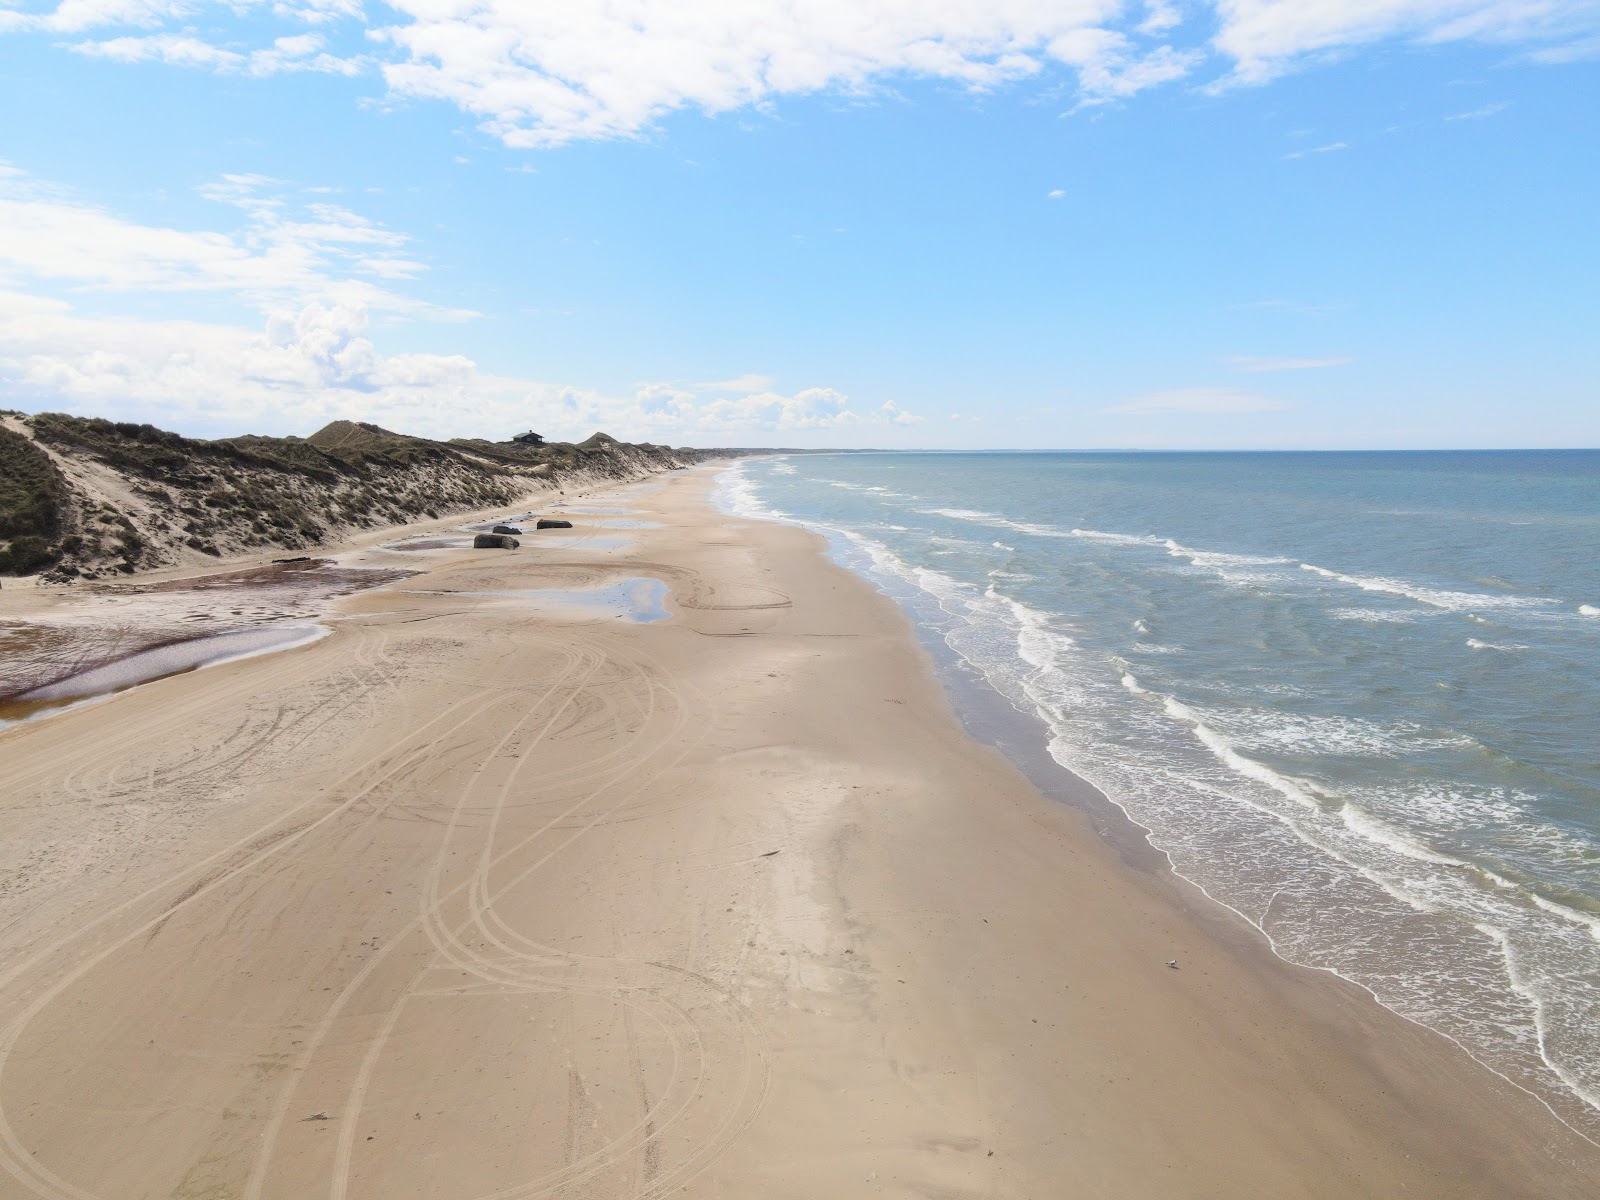 Zdjęcie Kandestederne Beach z powierzchnią jasny piasek